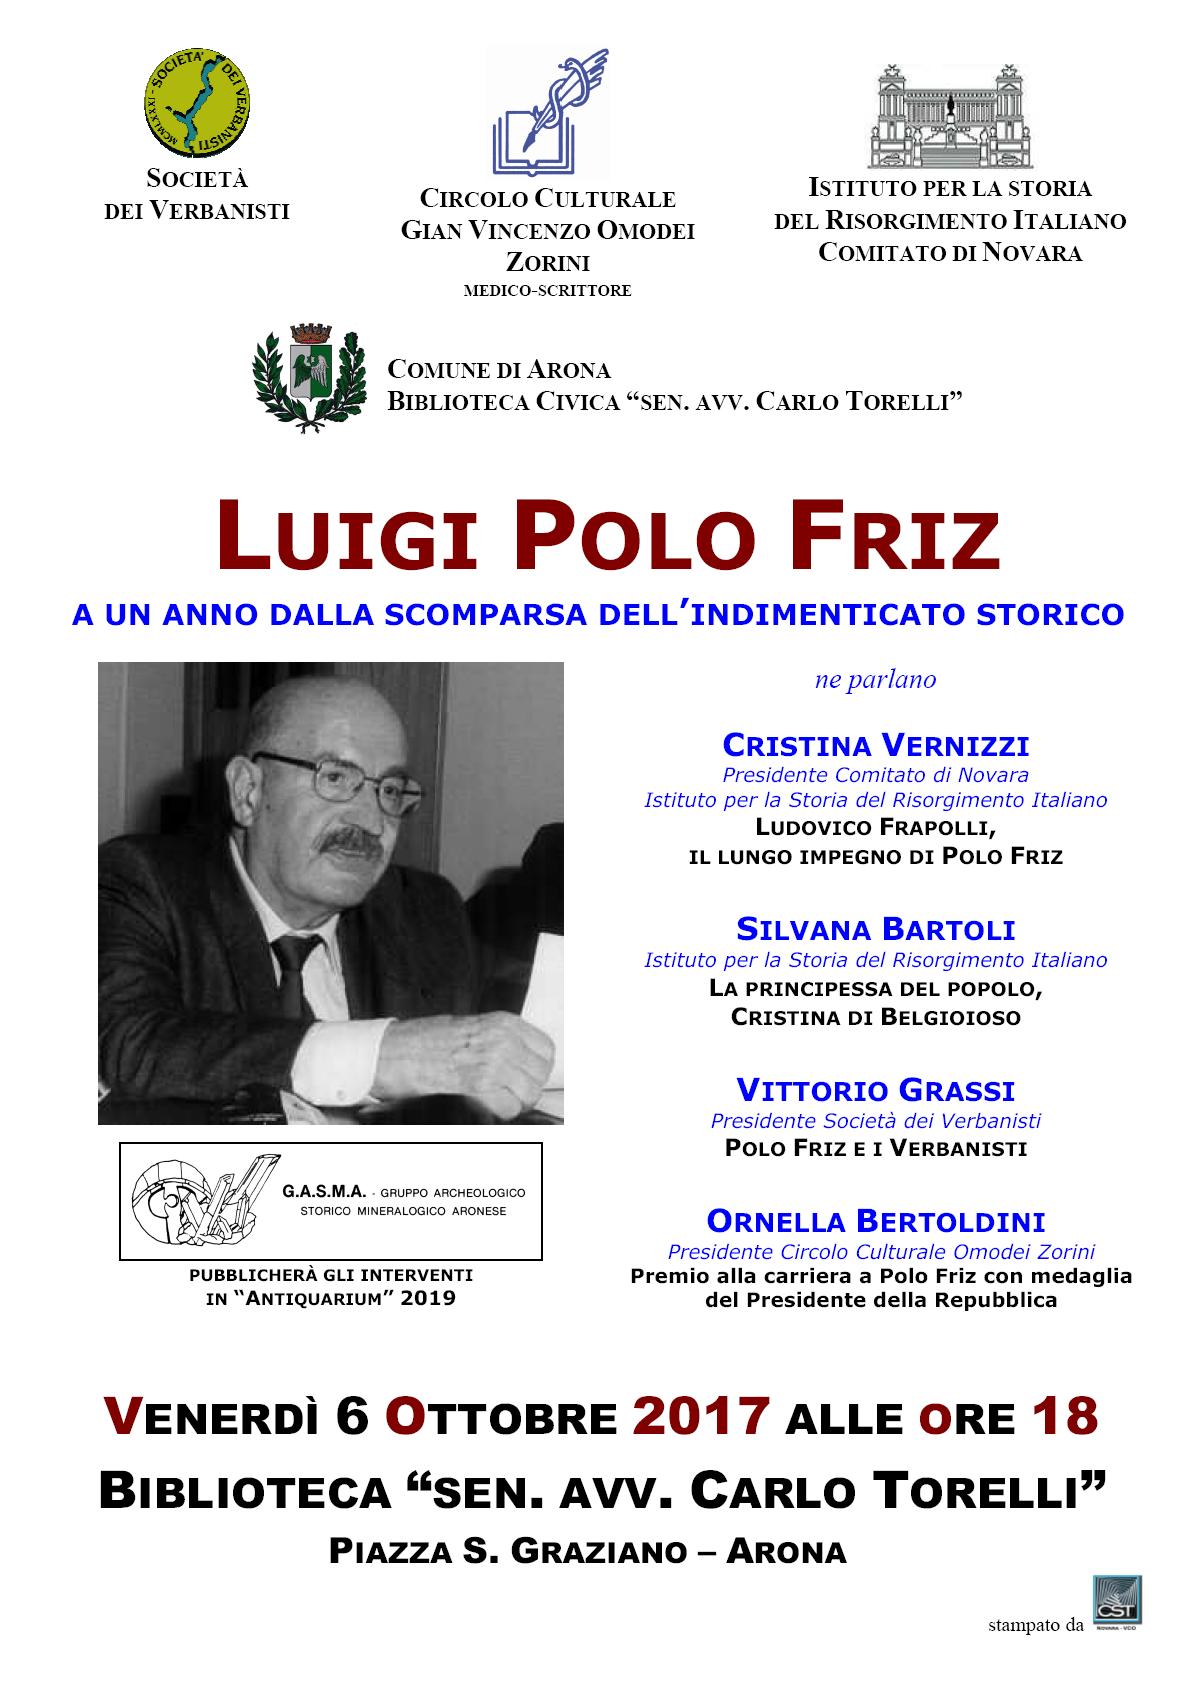 Luigi Polo Friz